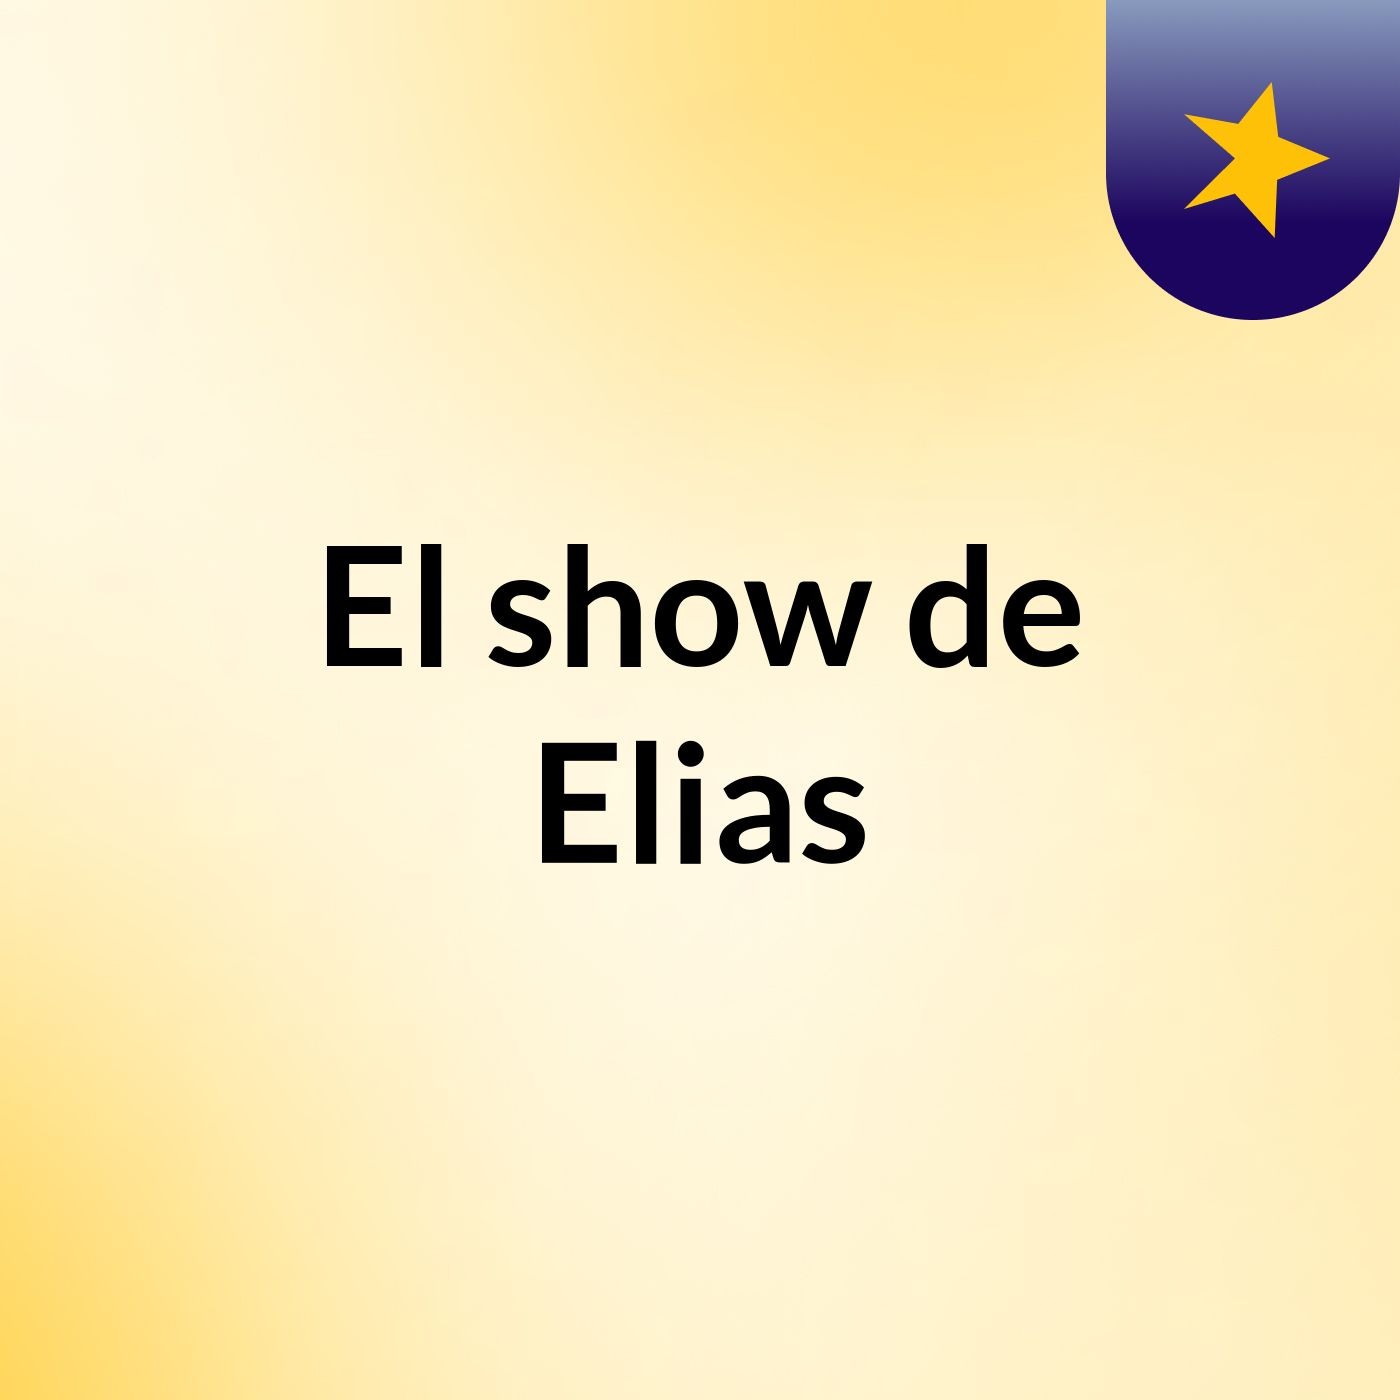 El show de Elias